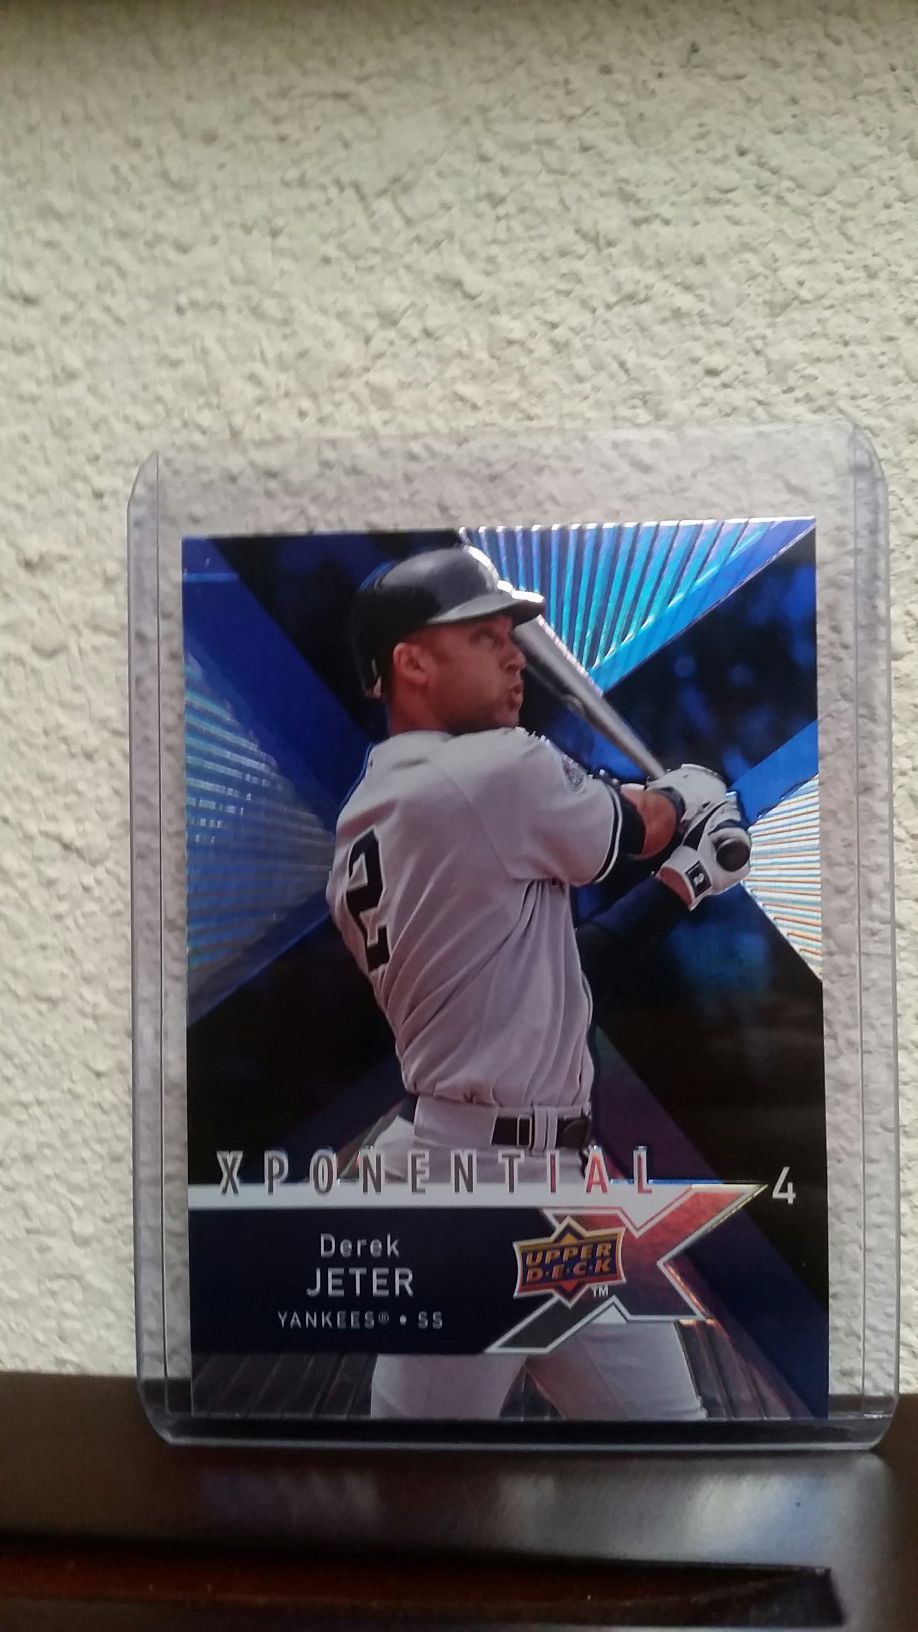 2008 Derek Jeter baseball insert card